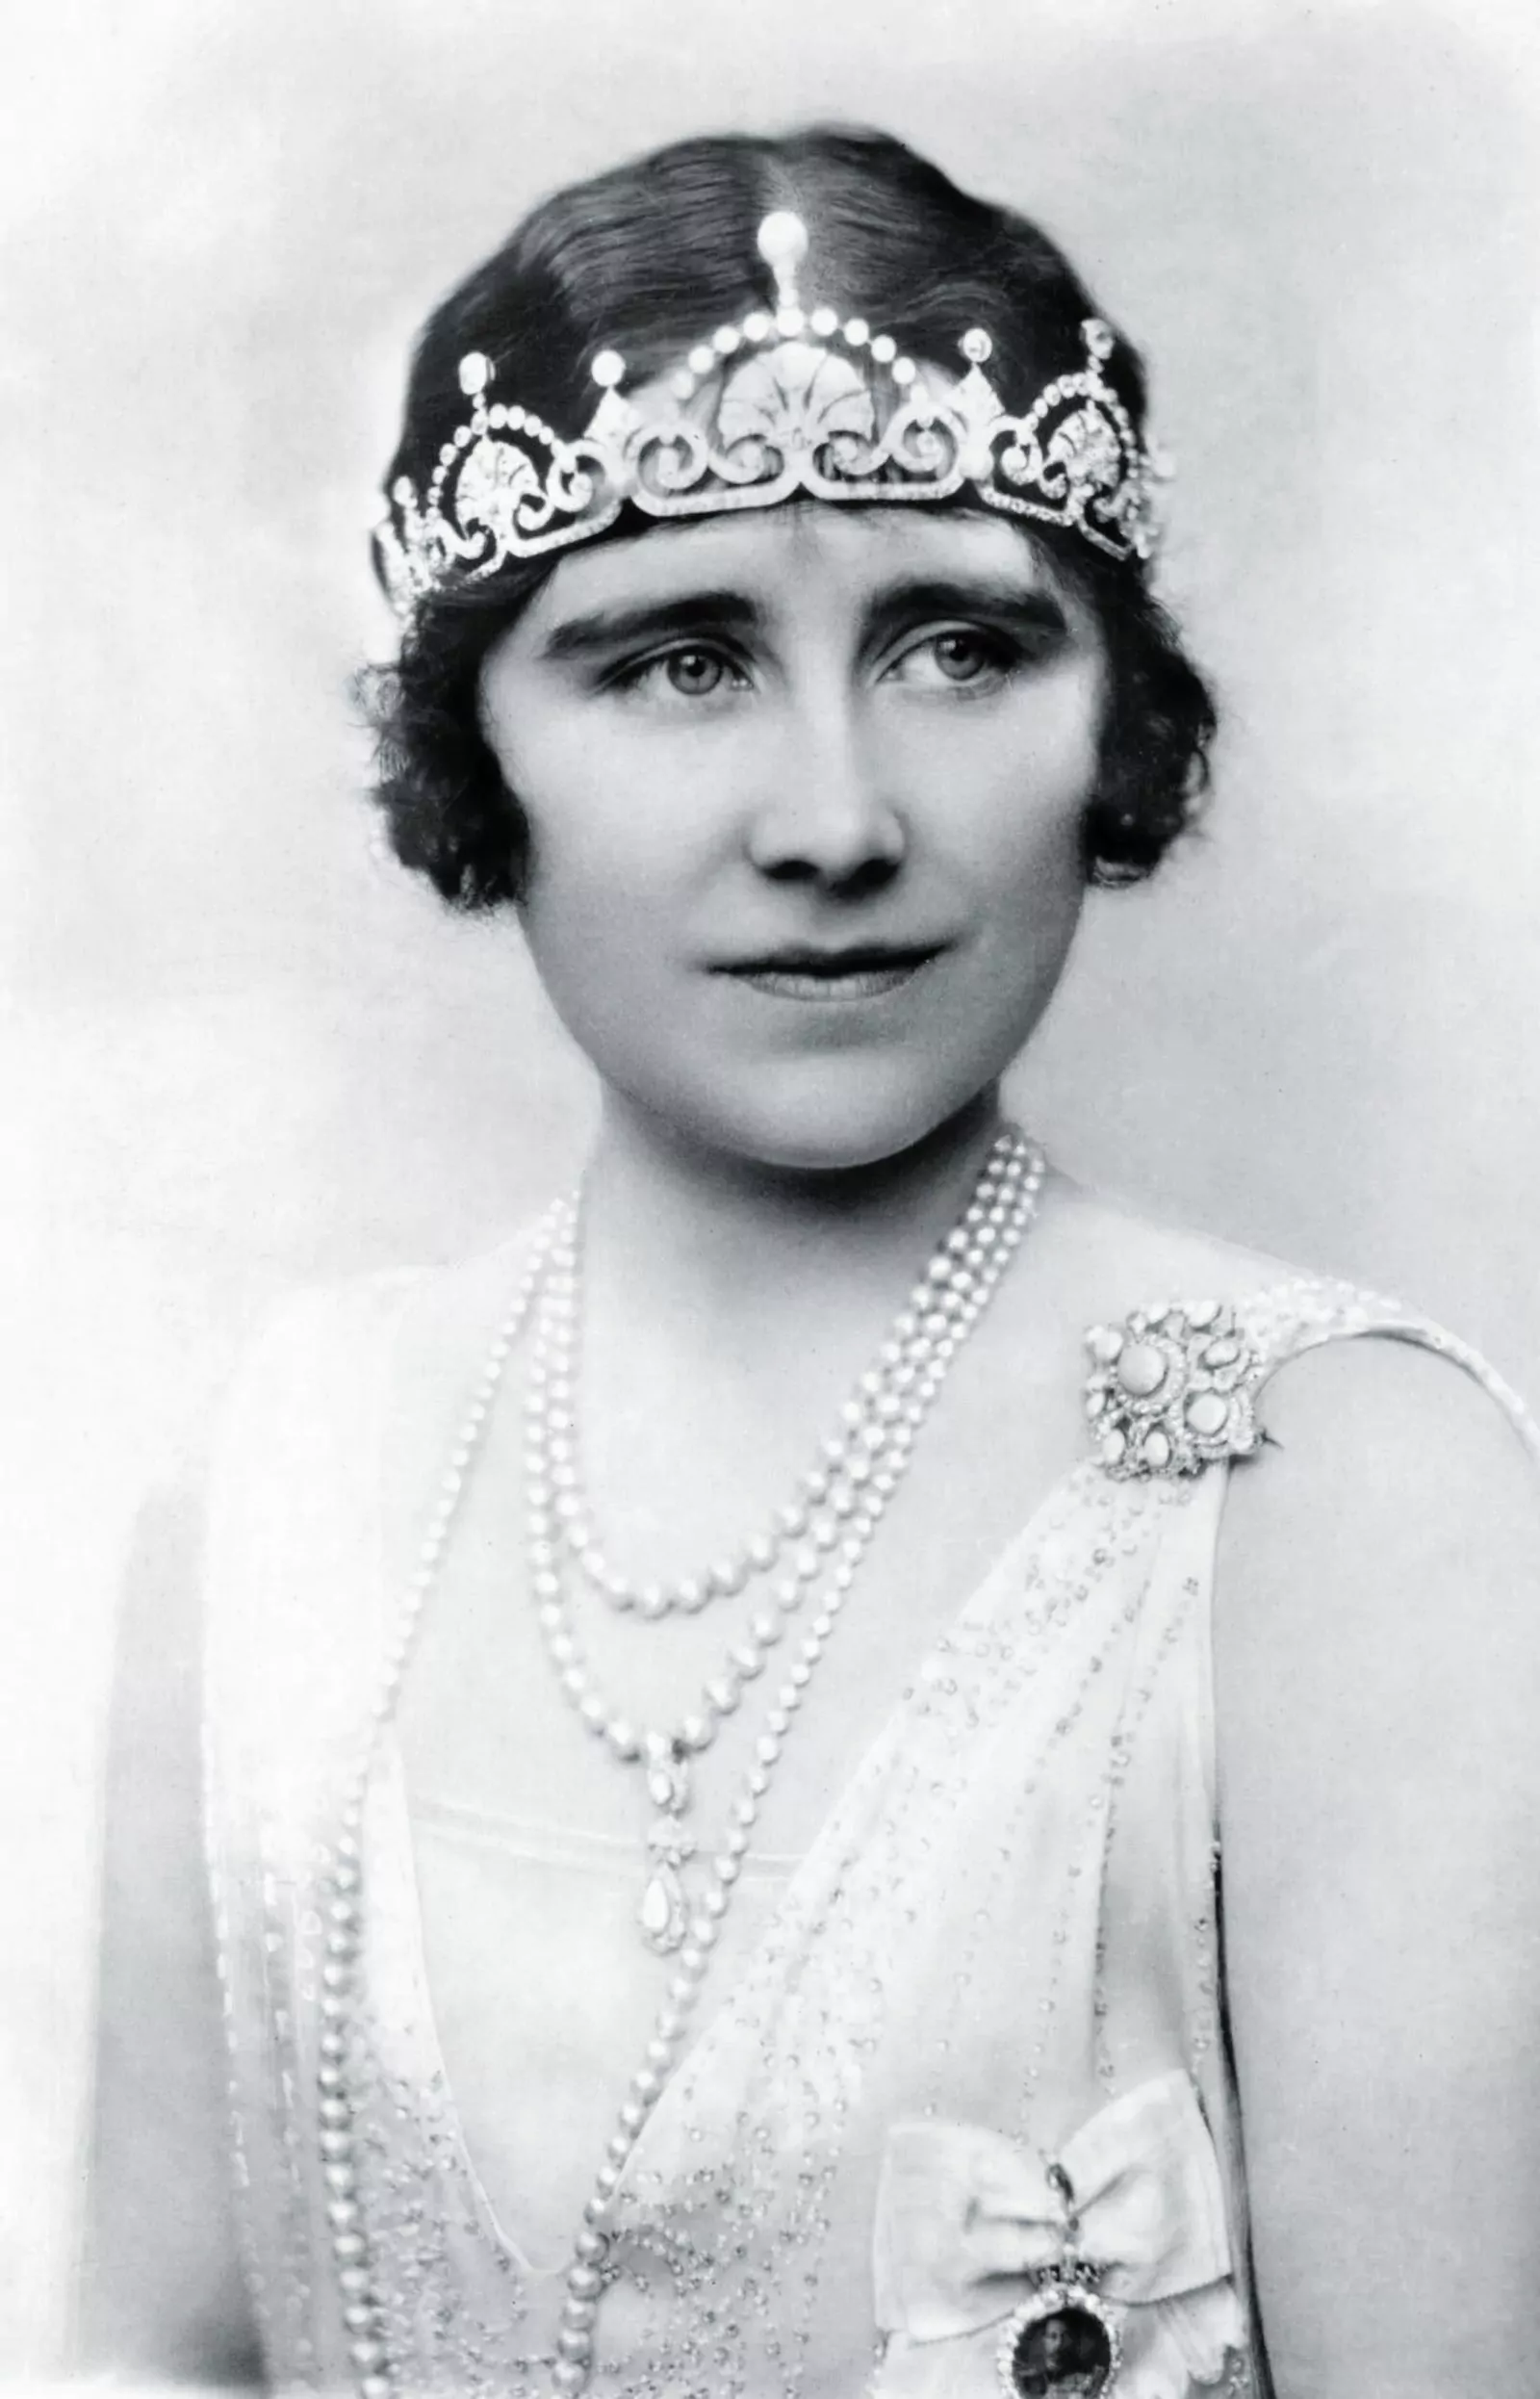 Елизавета Йоркская в 1930-е носила тиару «Цветок лотоса» по тогдашней моде как бандо